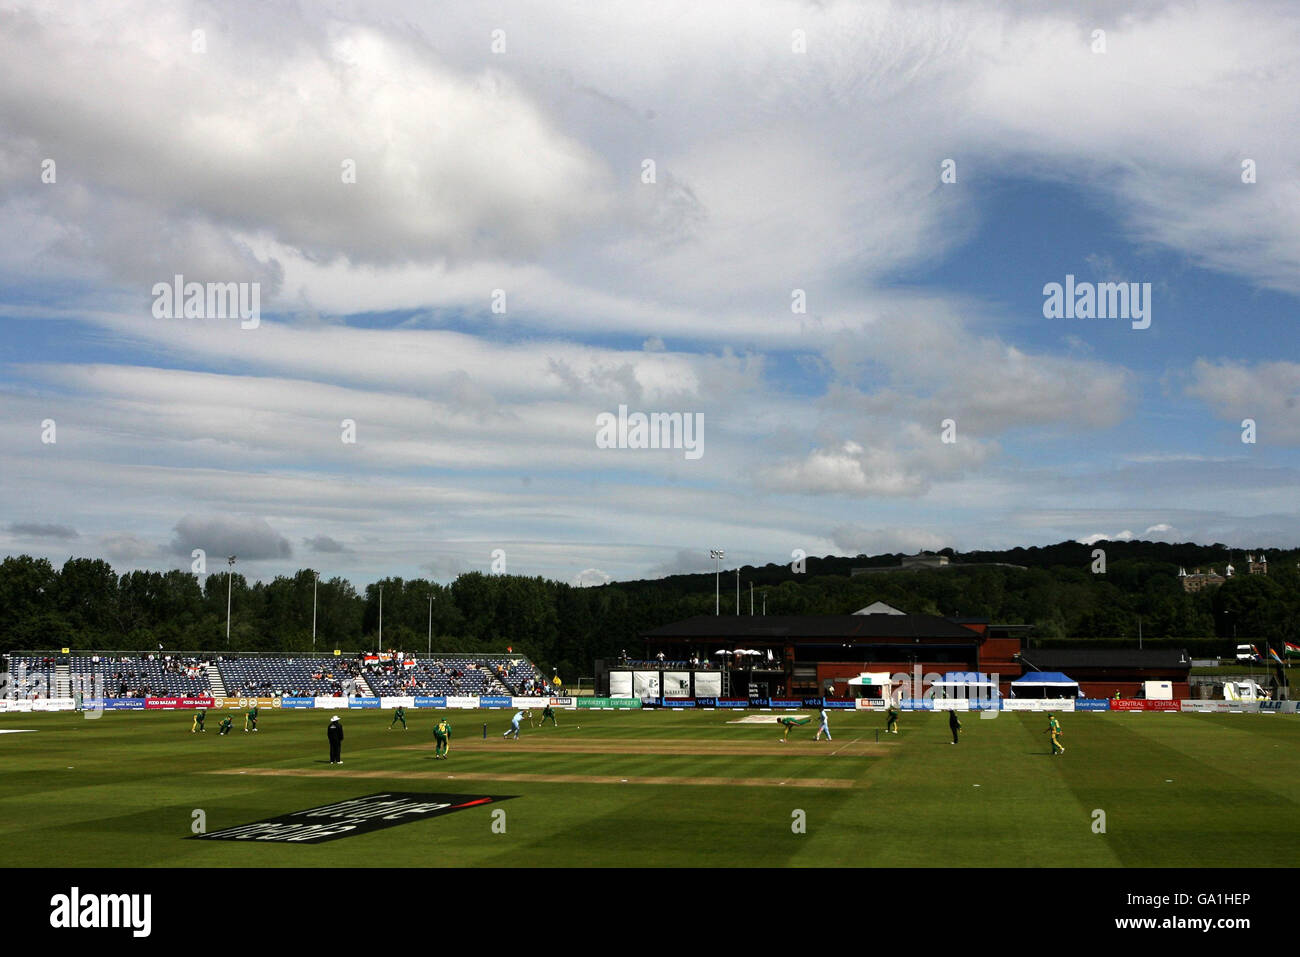 Eine allgemeine Ansicht des Civil Service Cricket Ground während des One Day International Spiels in Stormont, Belfast. Stockfoto